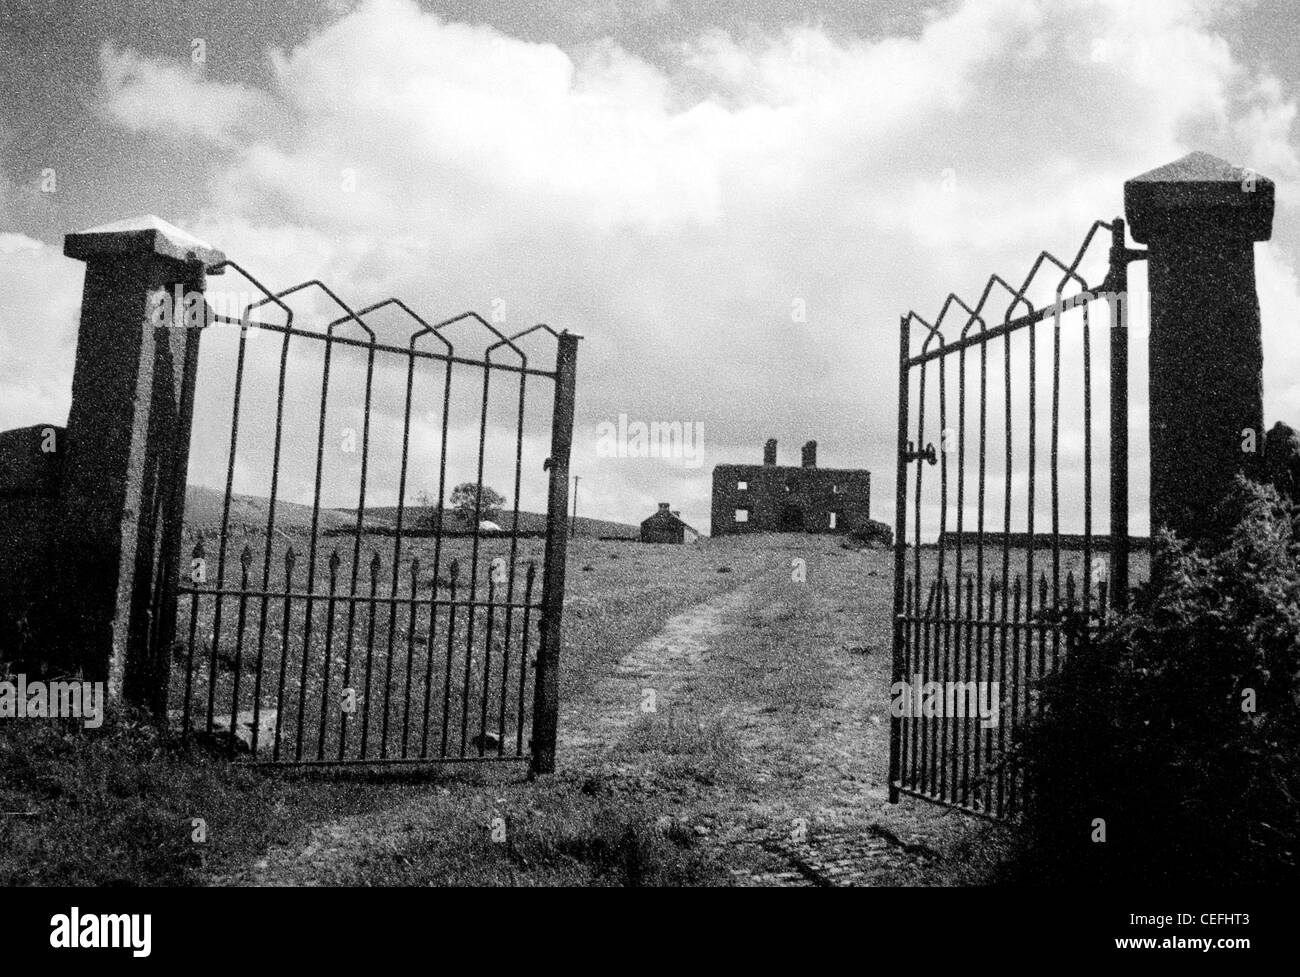 Irlande - Clae Co une barrière ouverte et une voie voie menant à une maison en ruine Banque D'Images